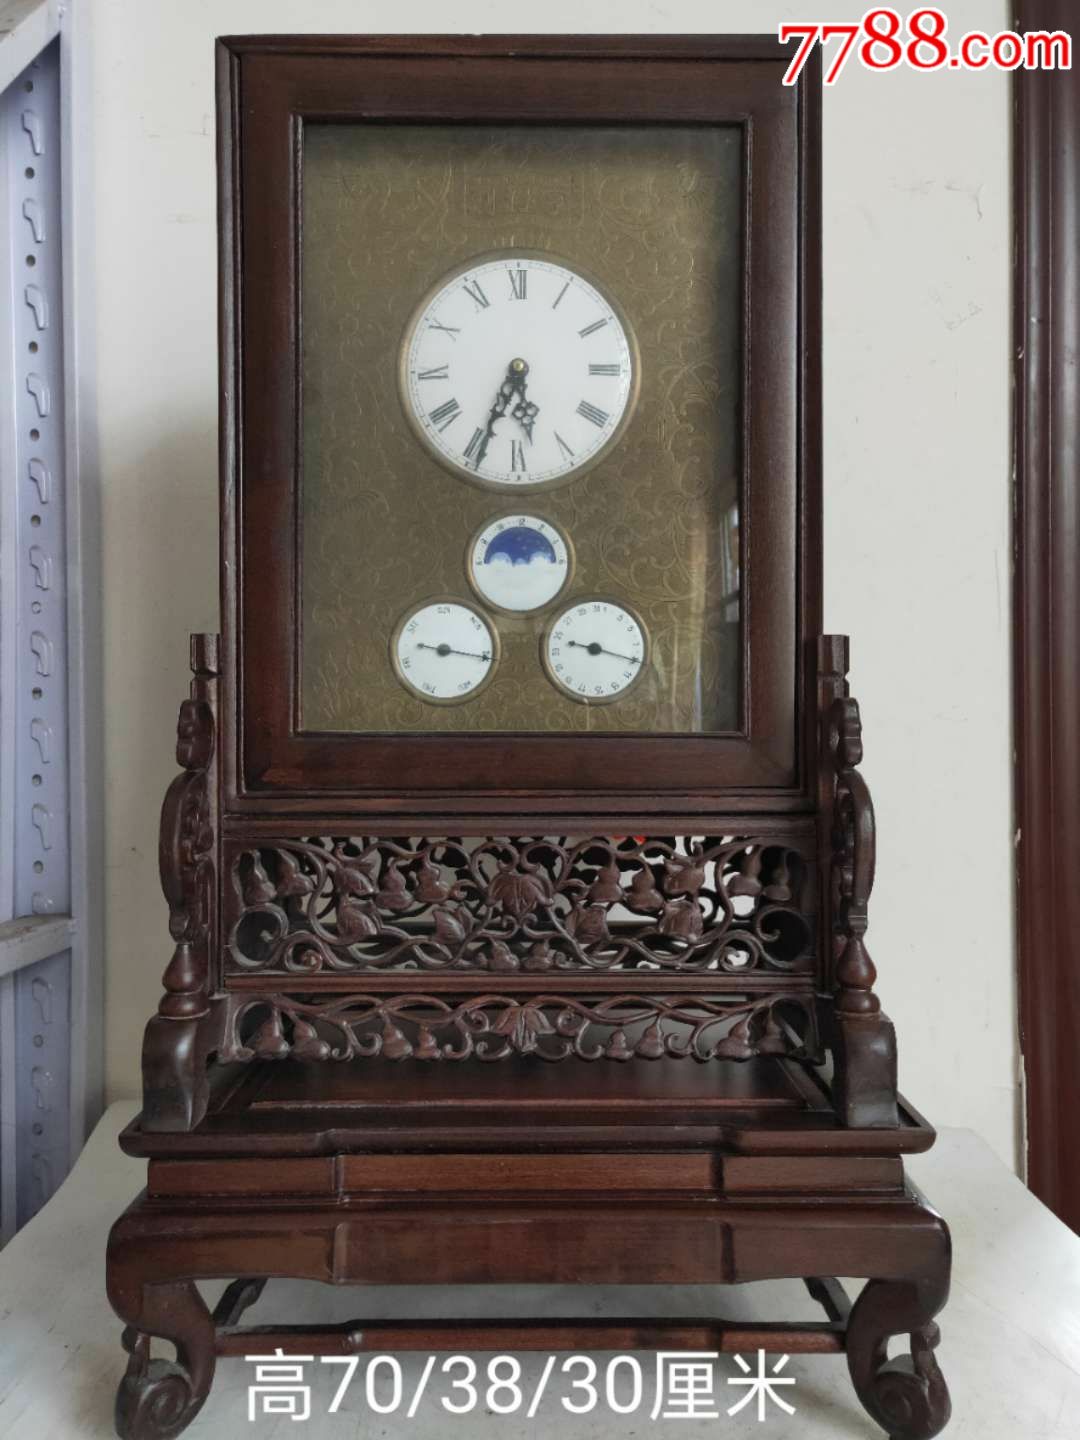 民国时期亨得利钟表,红木底座-座钟/落地钟-7788收藏